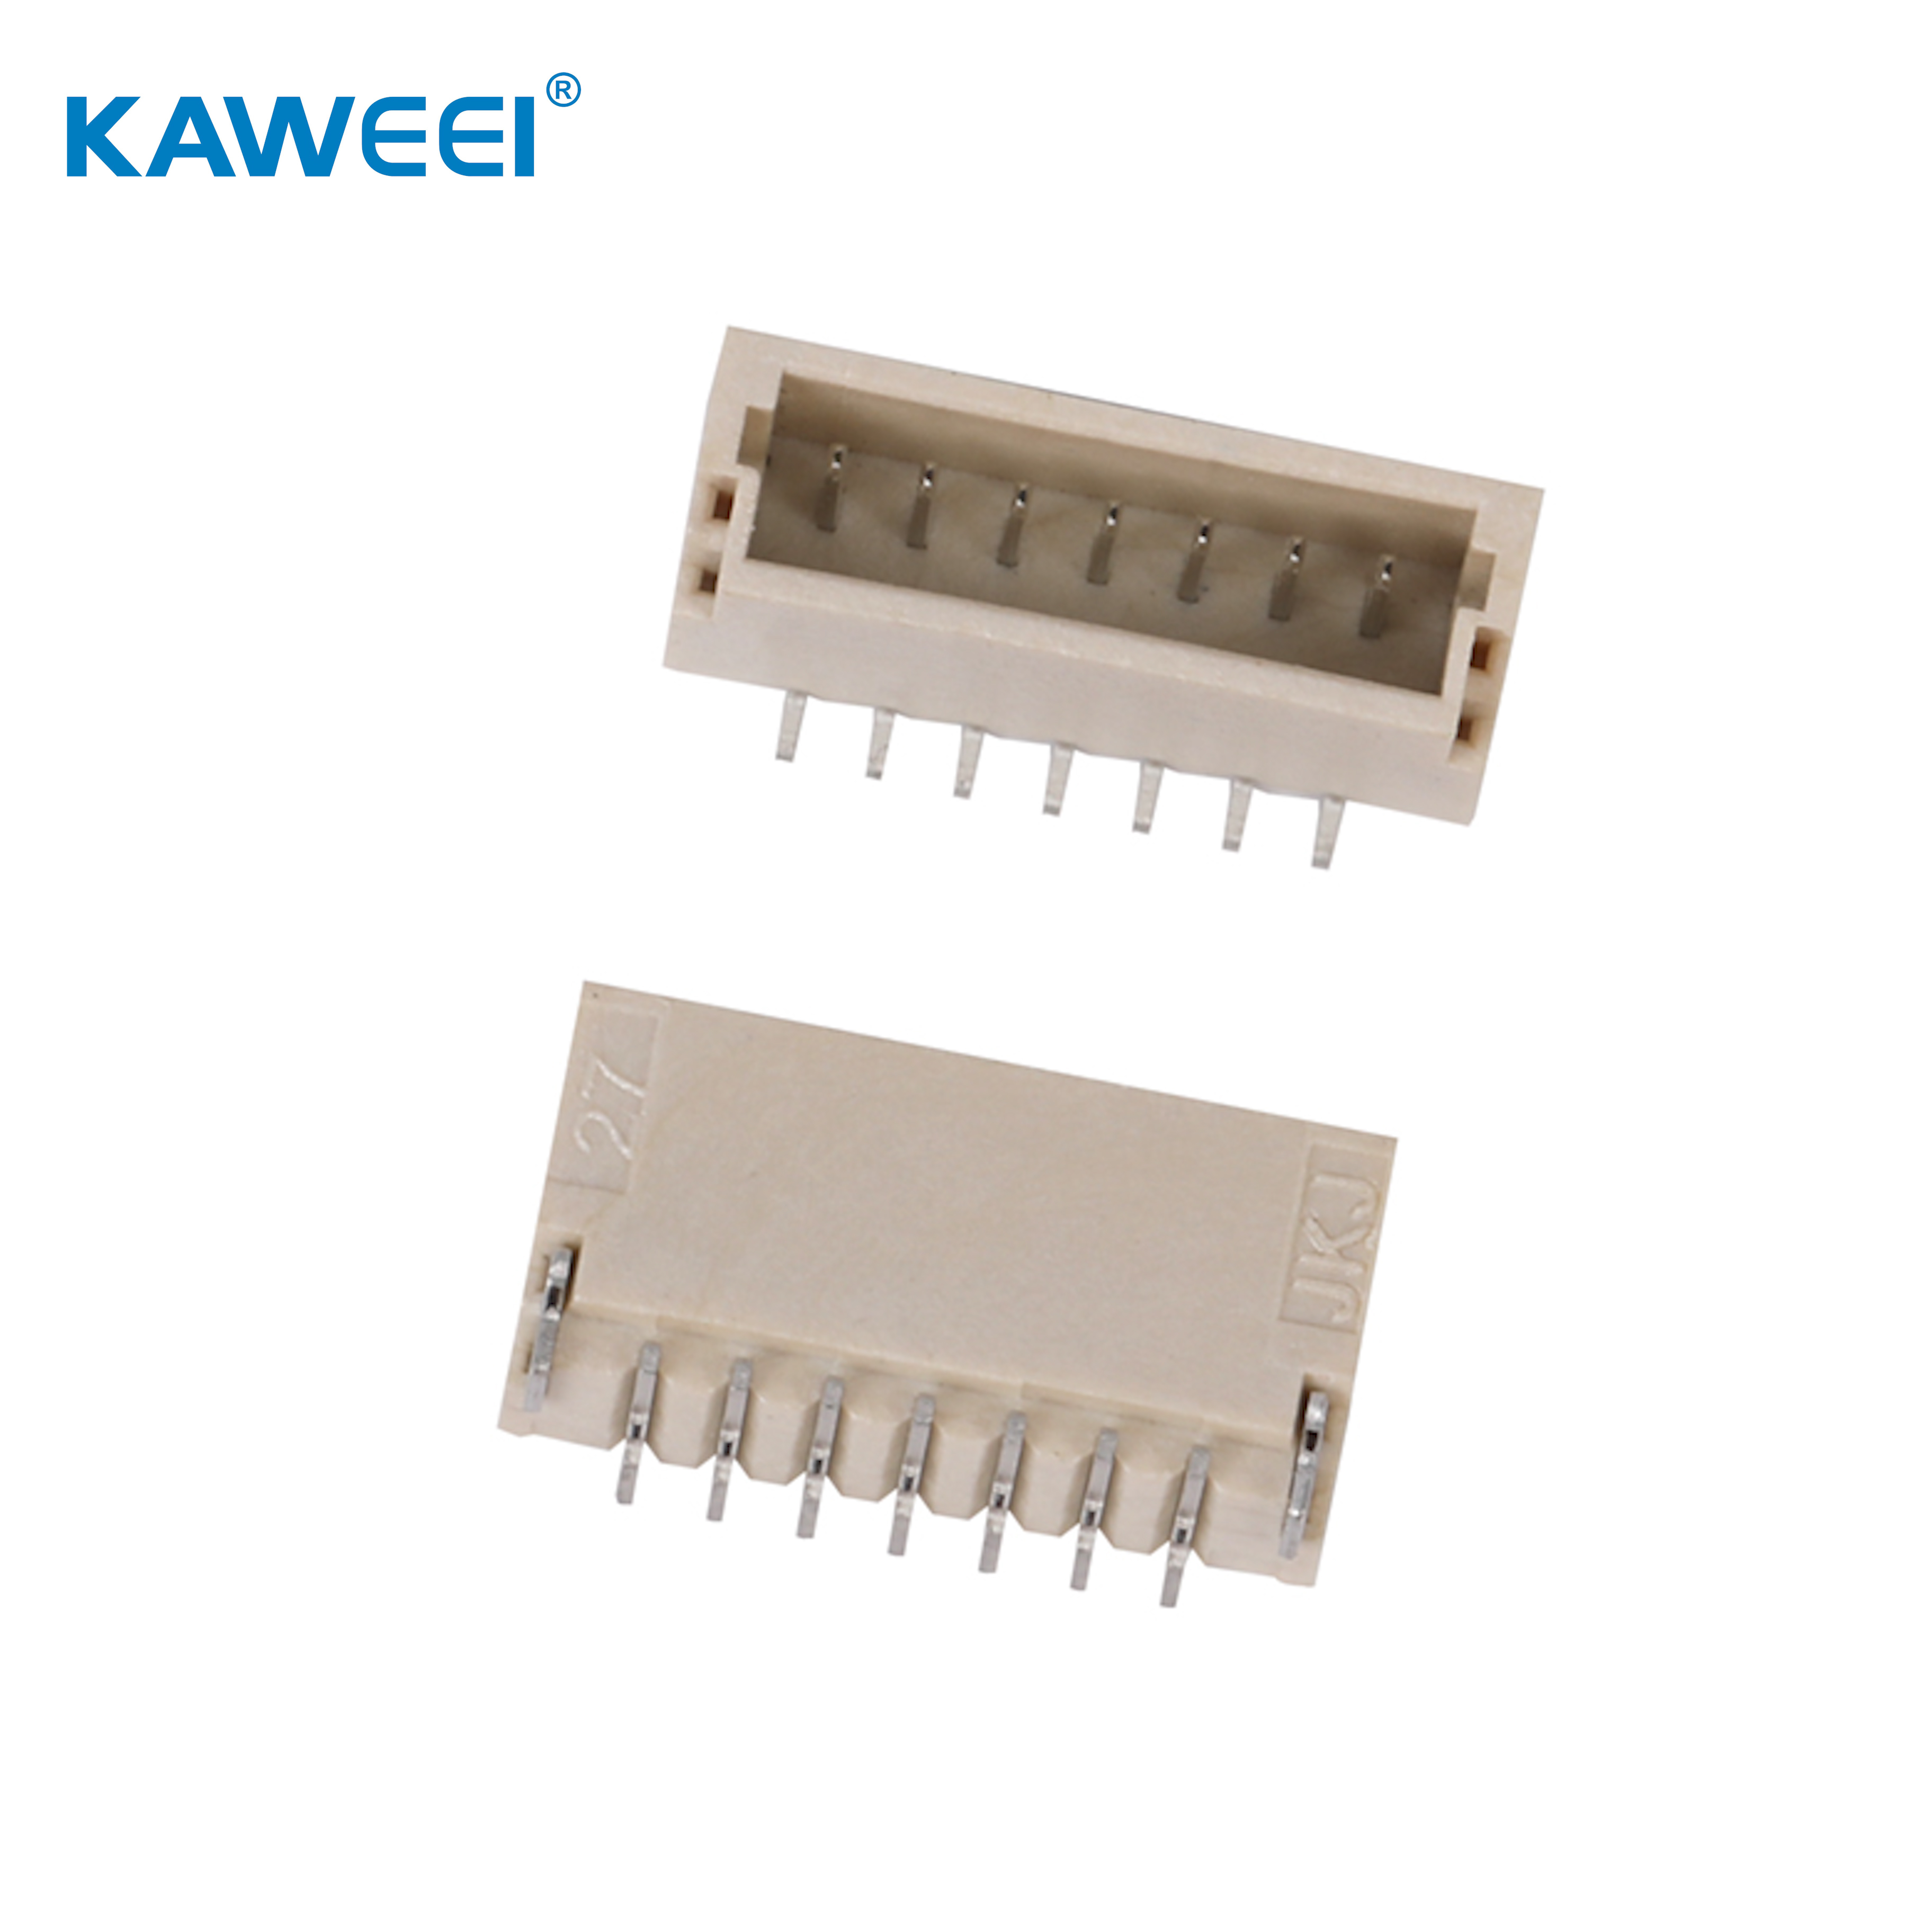 1,0 mm nagib žice za konektor ploče PCB konektor